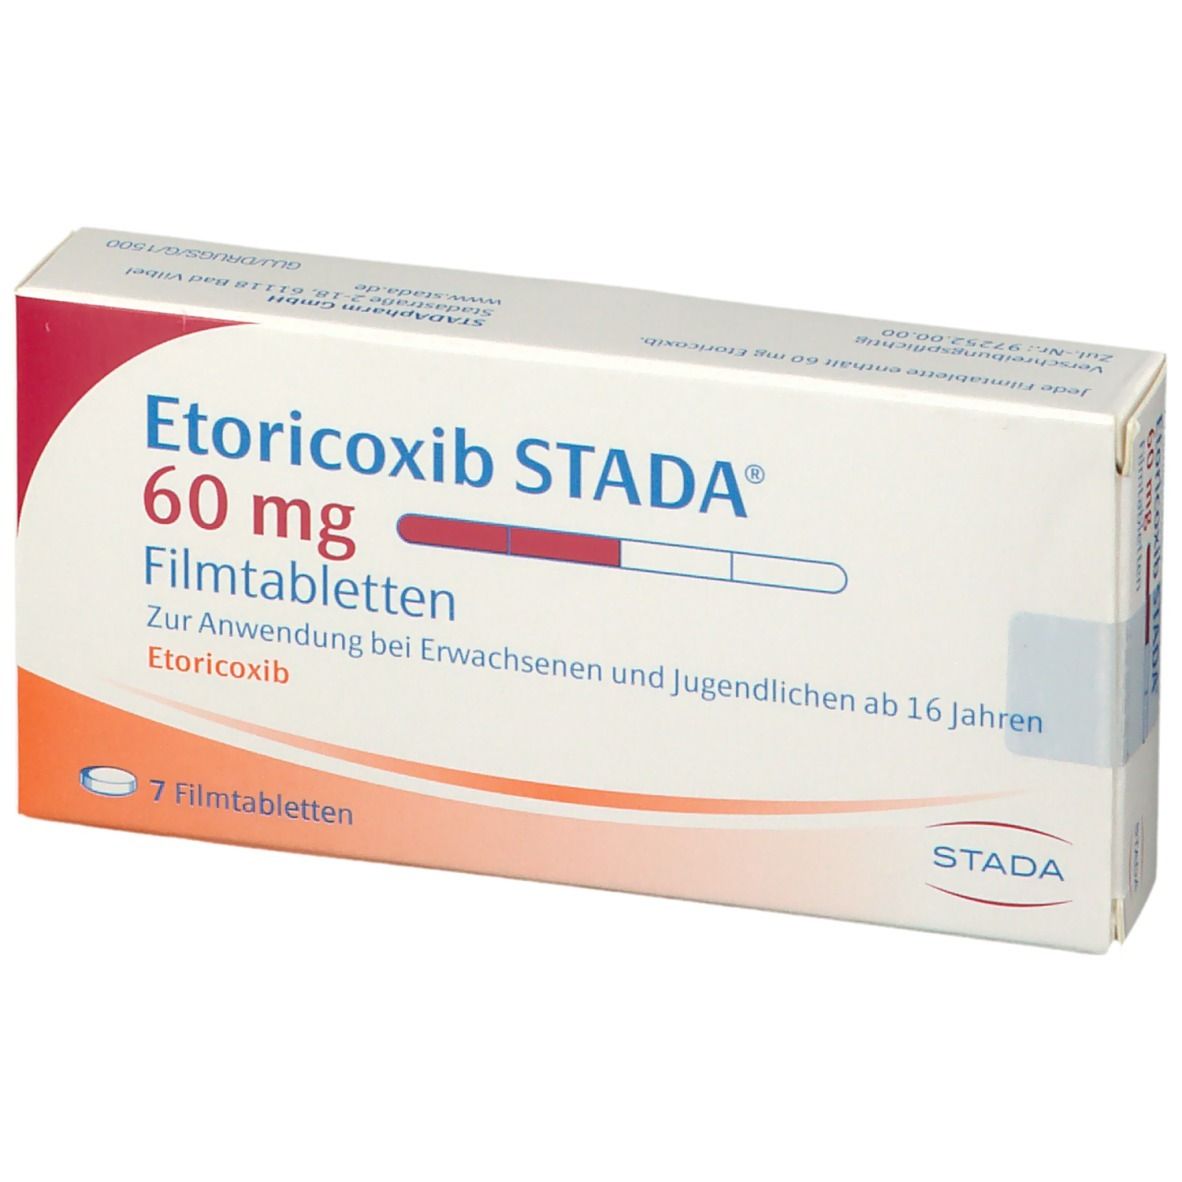 Etoricoxib STADA® 60mg